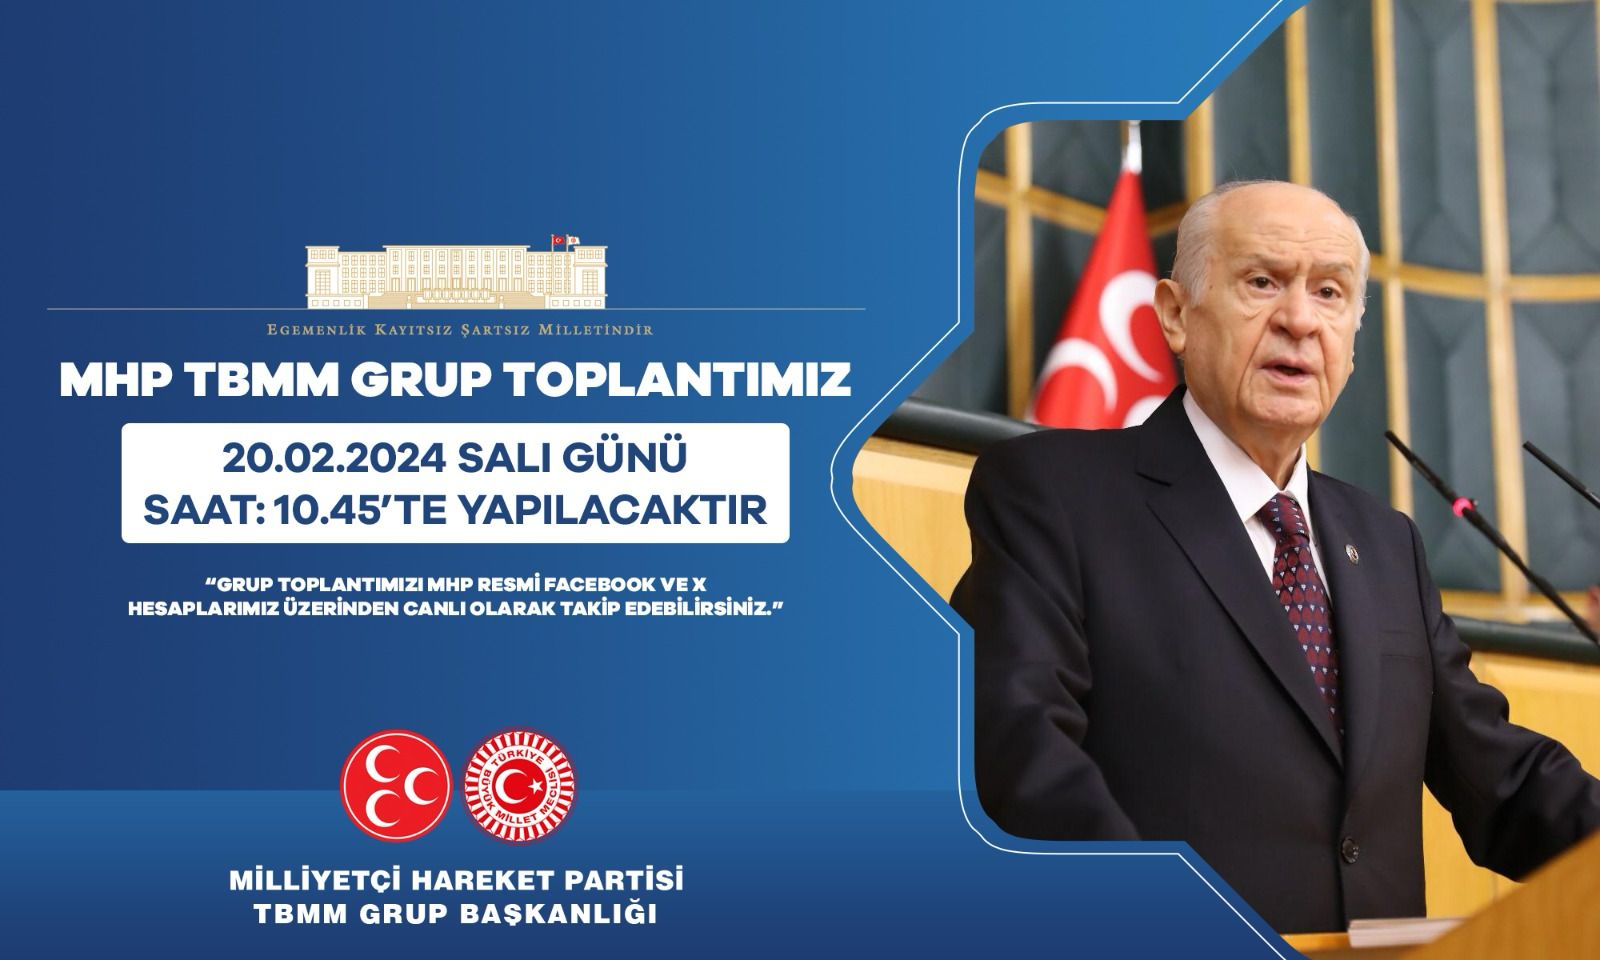 MHP'nin TBMM Grup Toplantısı, Politika ve Türkiye'nin Meselelerini Ele Alacak